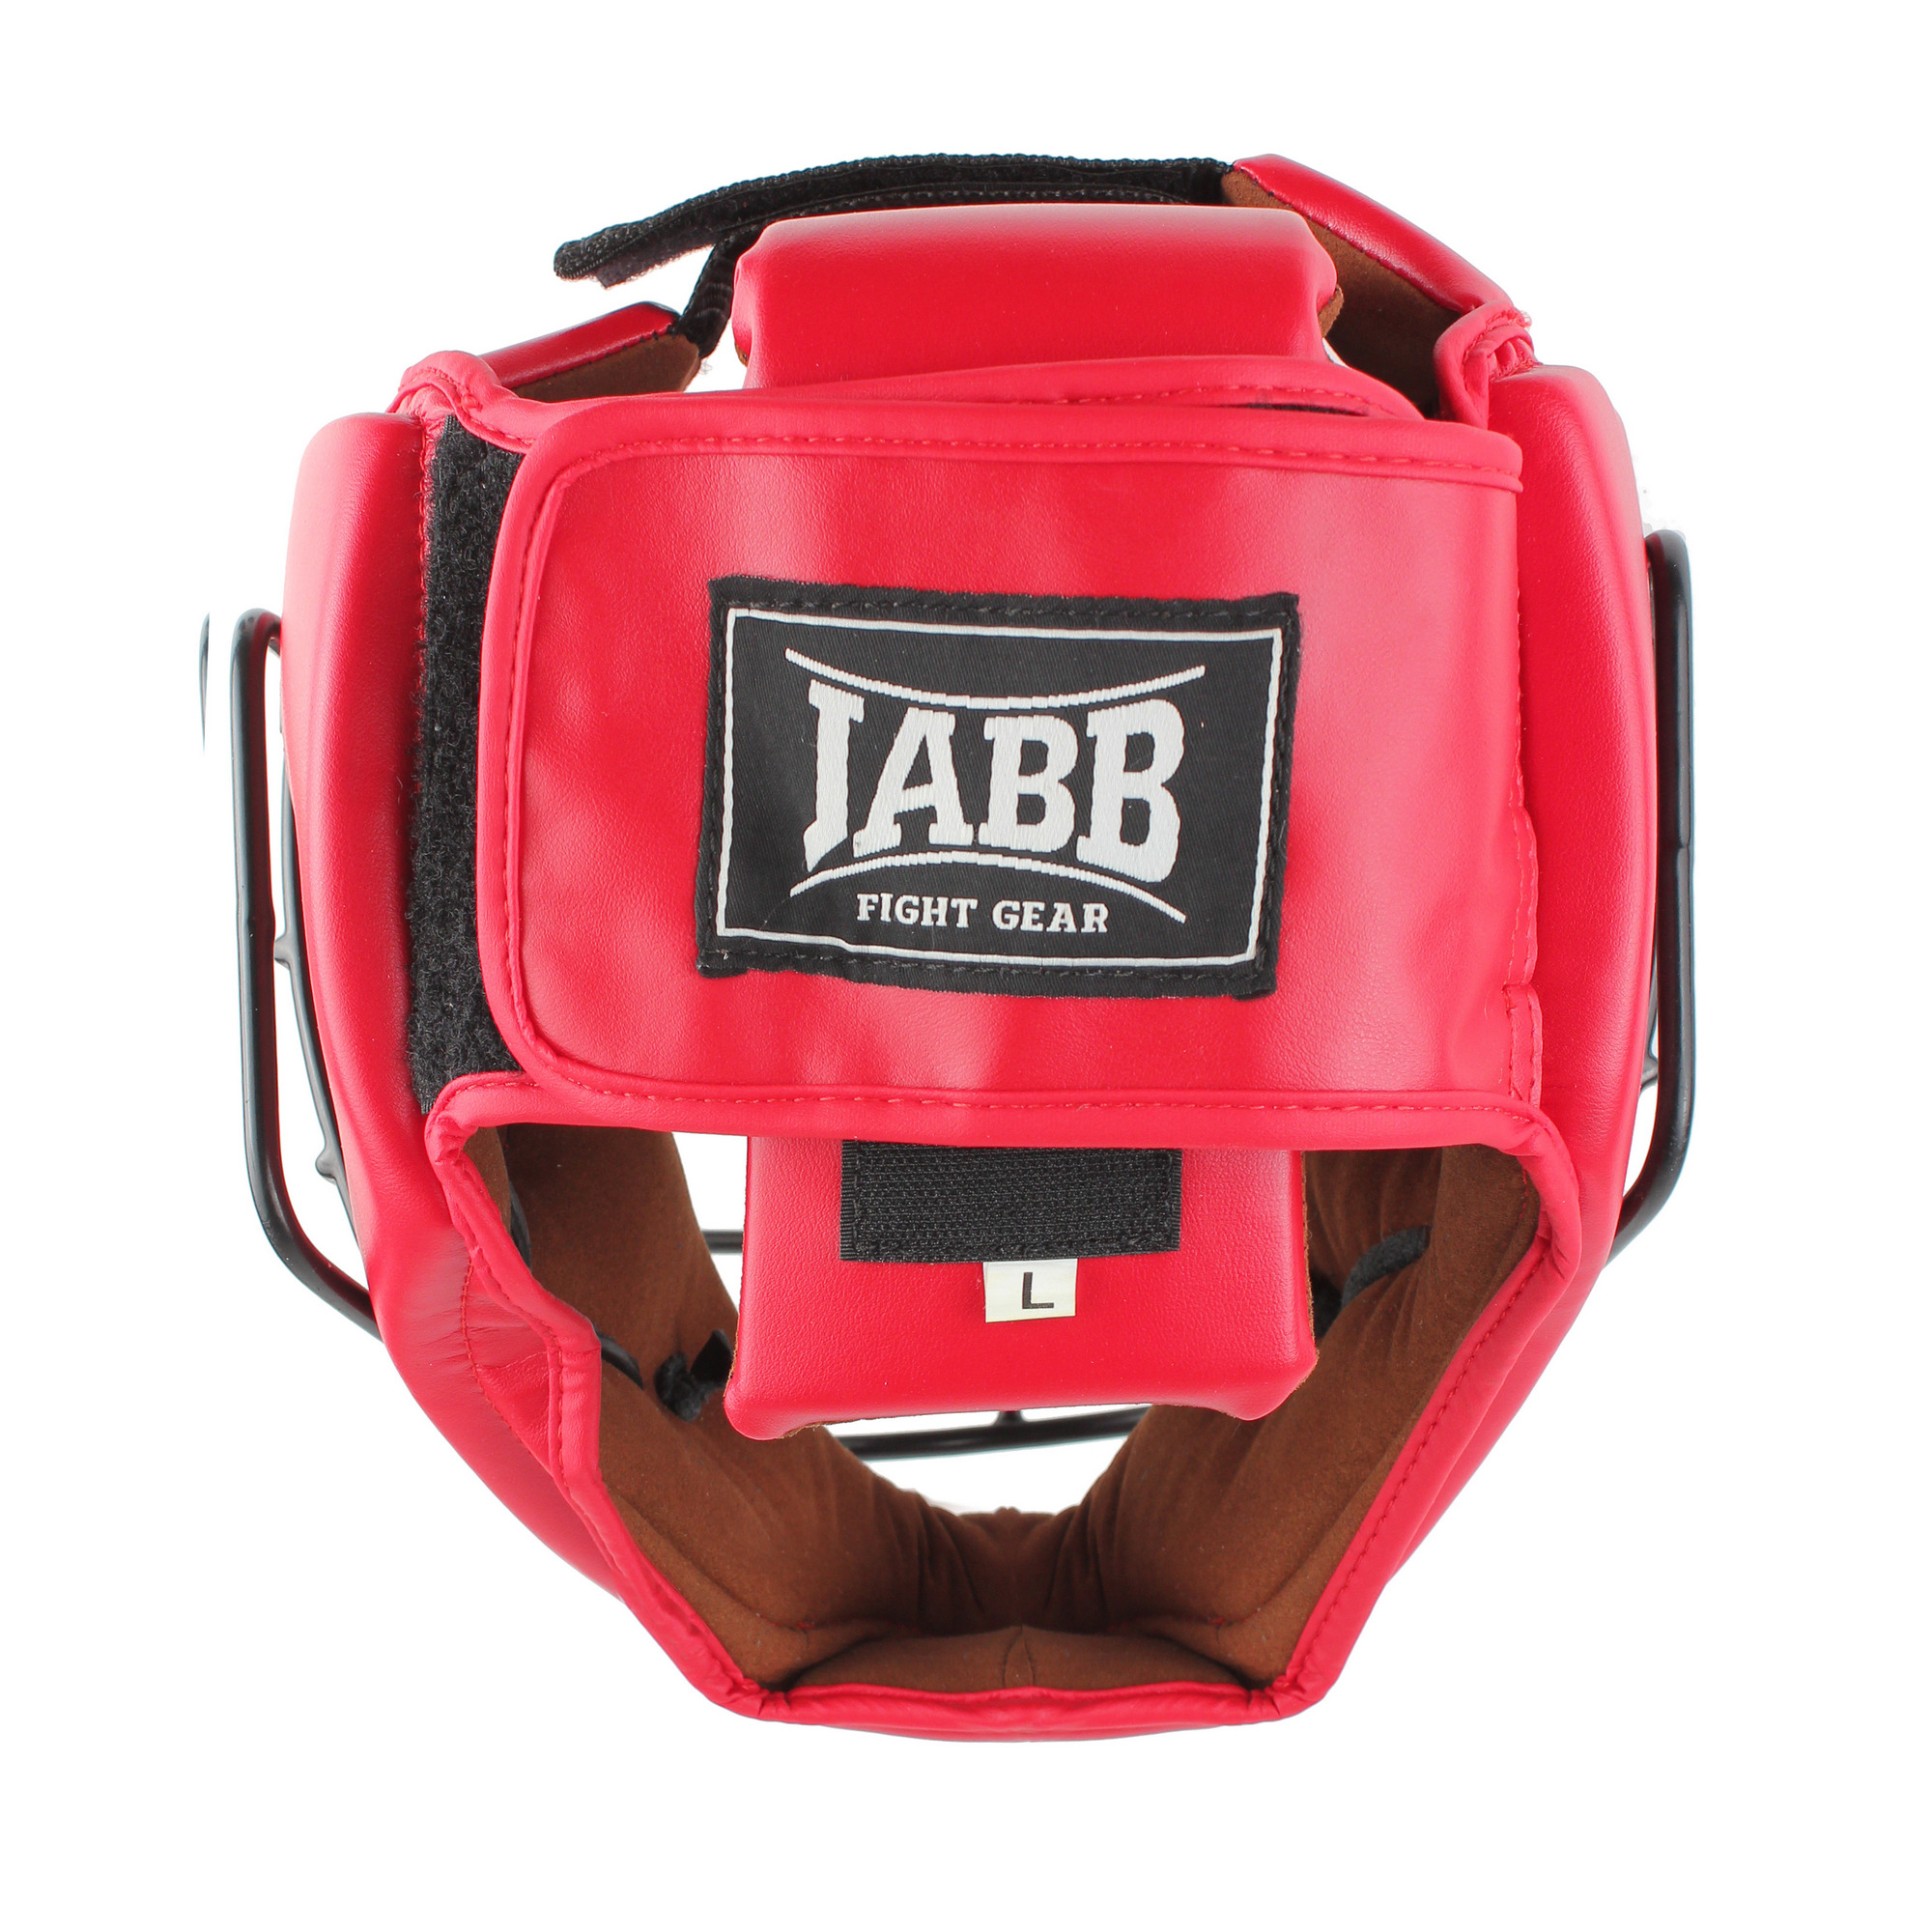 Шлем для рукопашного боя с защитной маской .(иск.кожа) Jabb JE-6012, красный 2000_2000